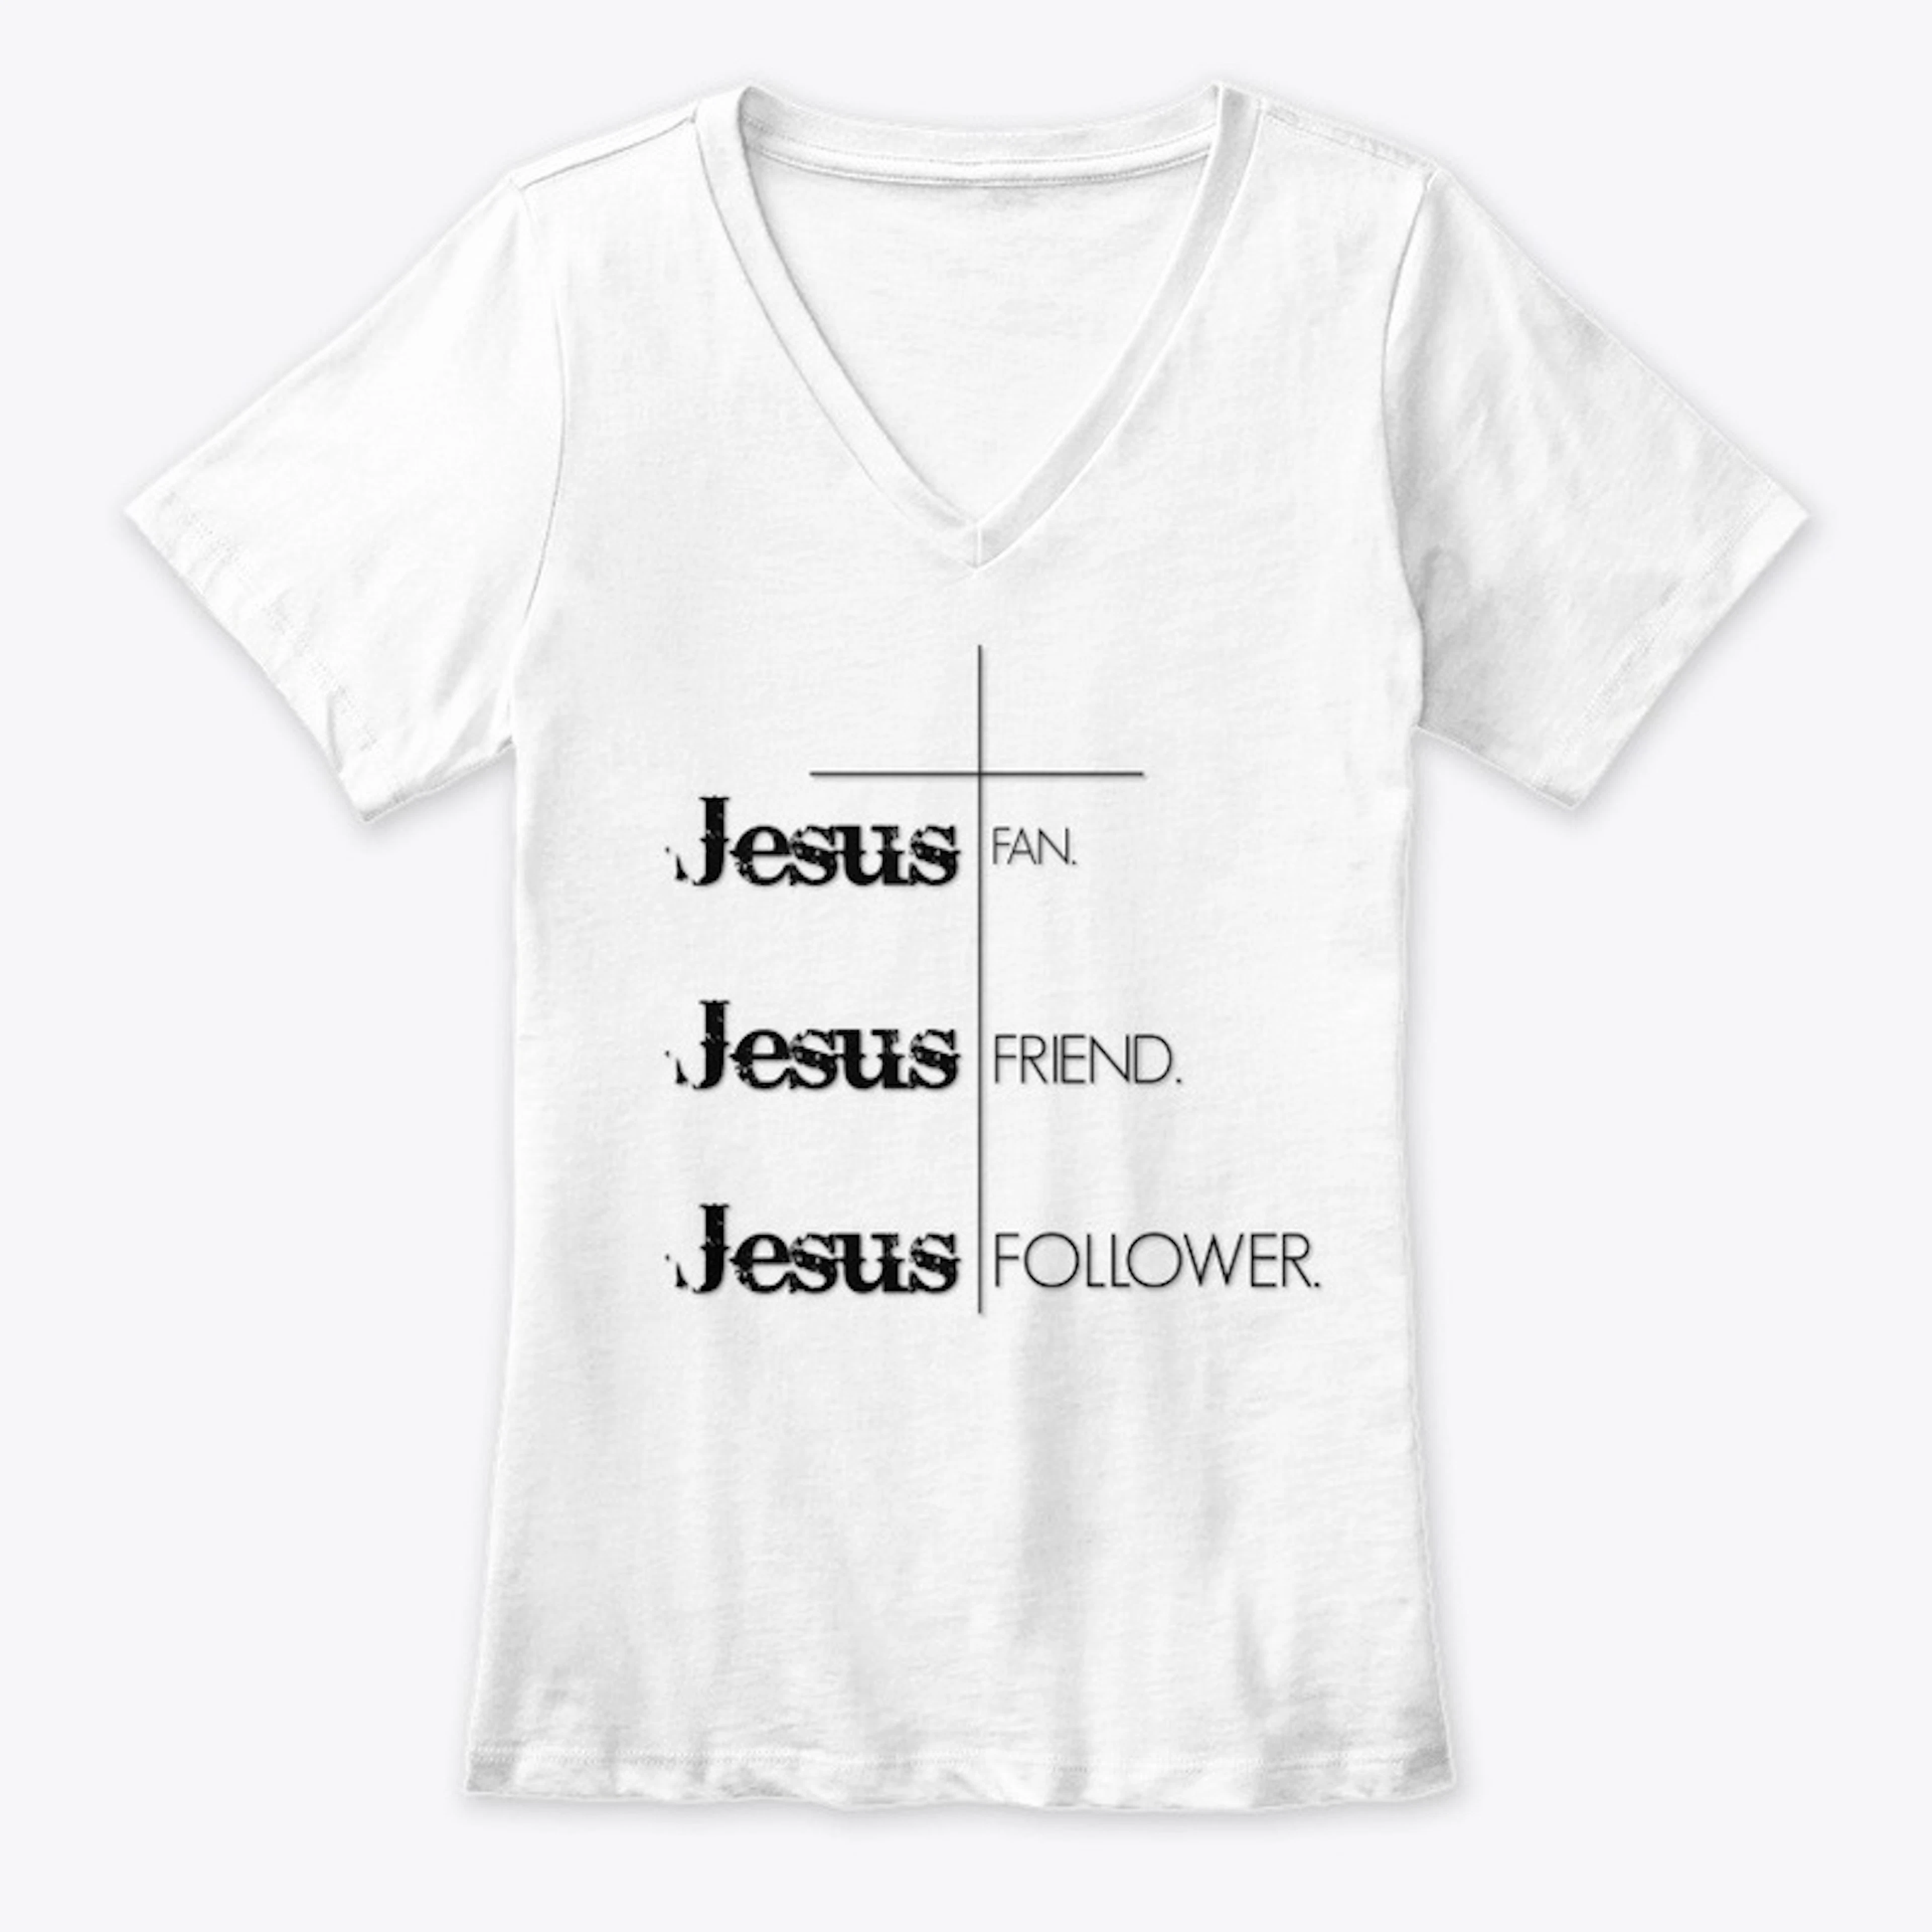 Jesus Fan. Jesus Friend. Jesus Follower